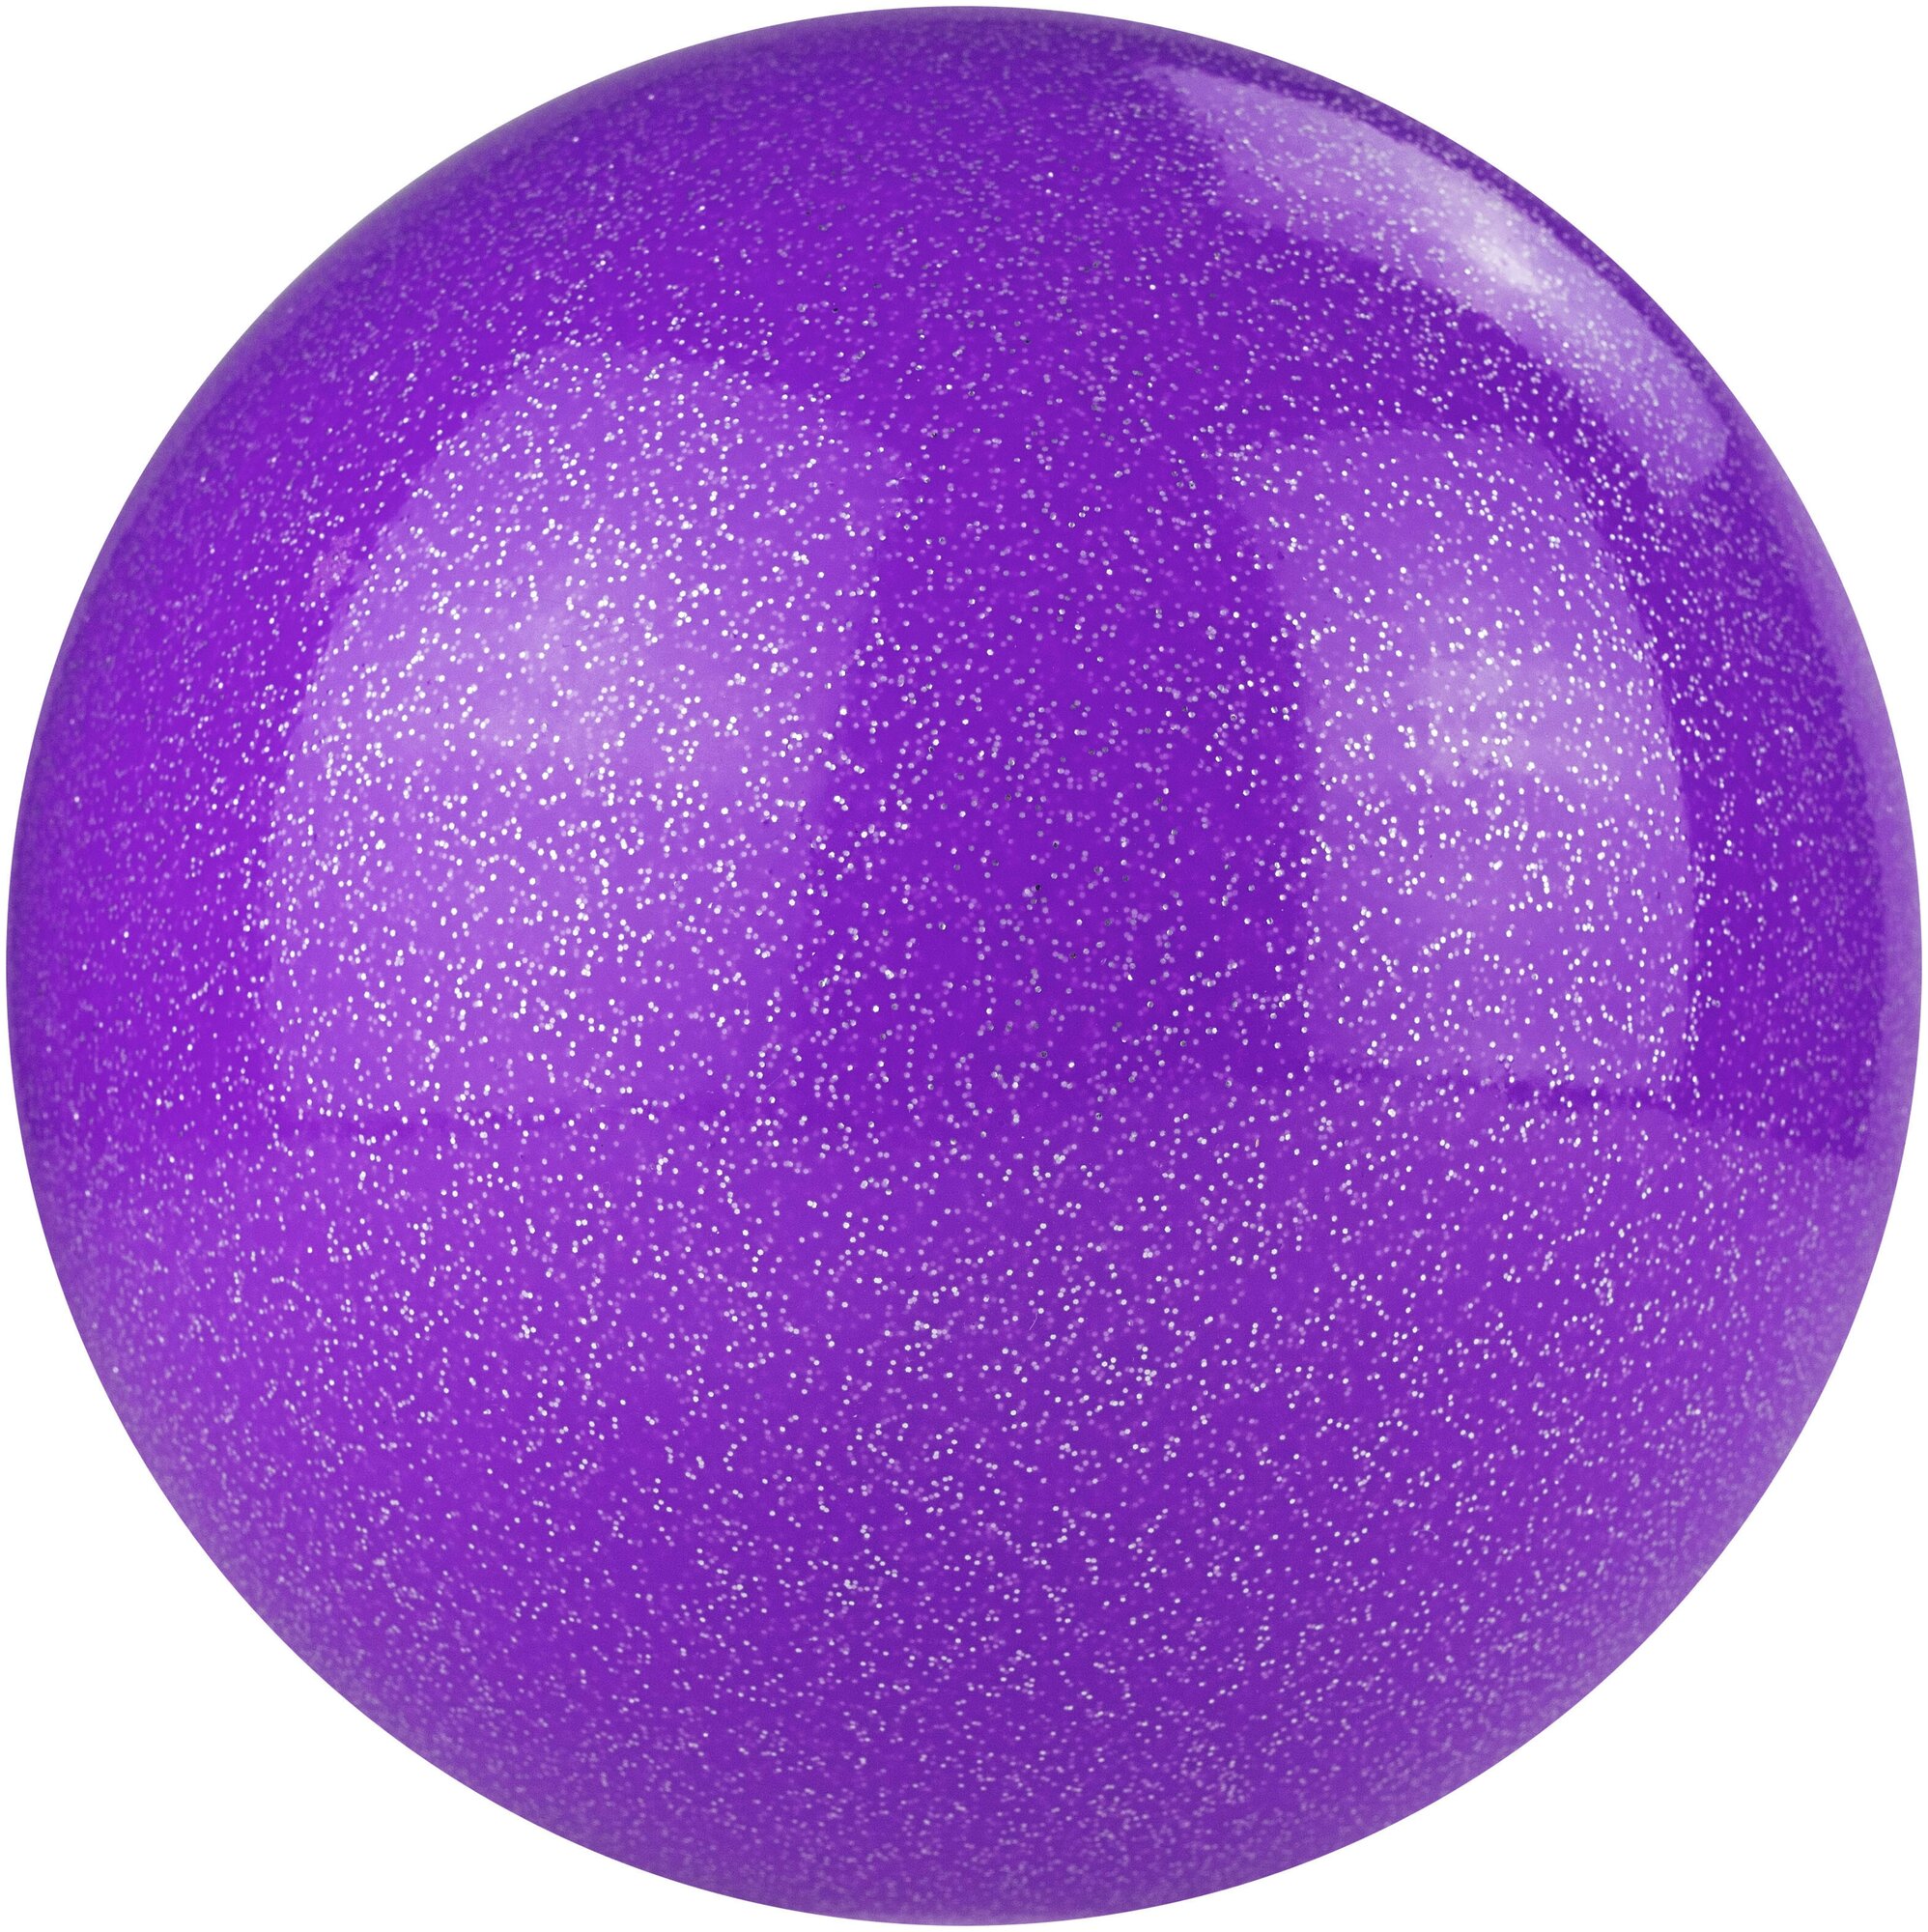 Мяч для художественной гимнастики однотонный Torres Agp-19-09, диаметр 19см, лиловый с блестками